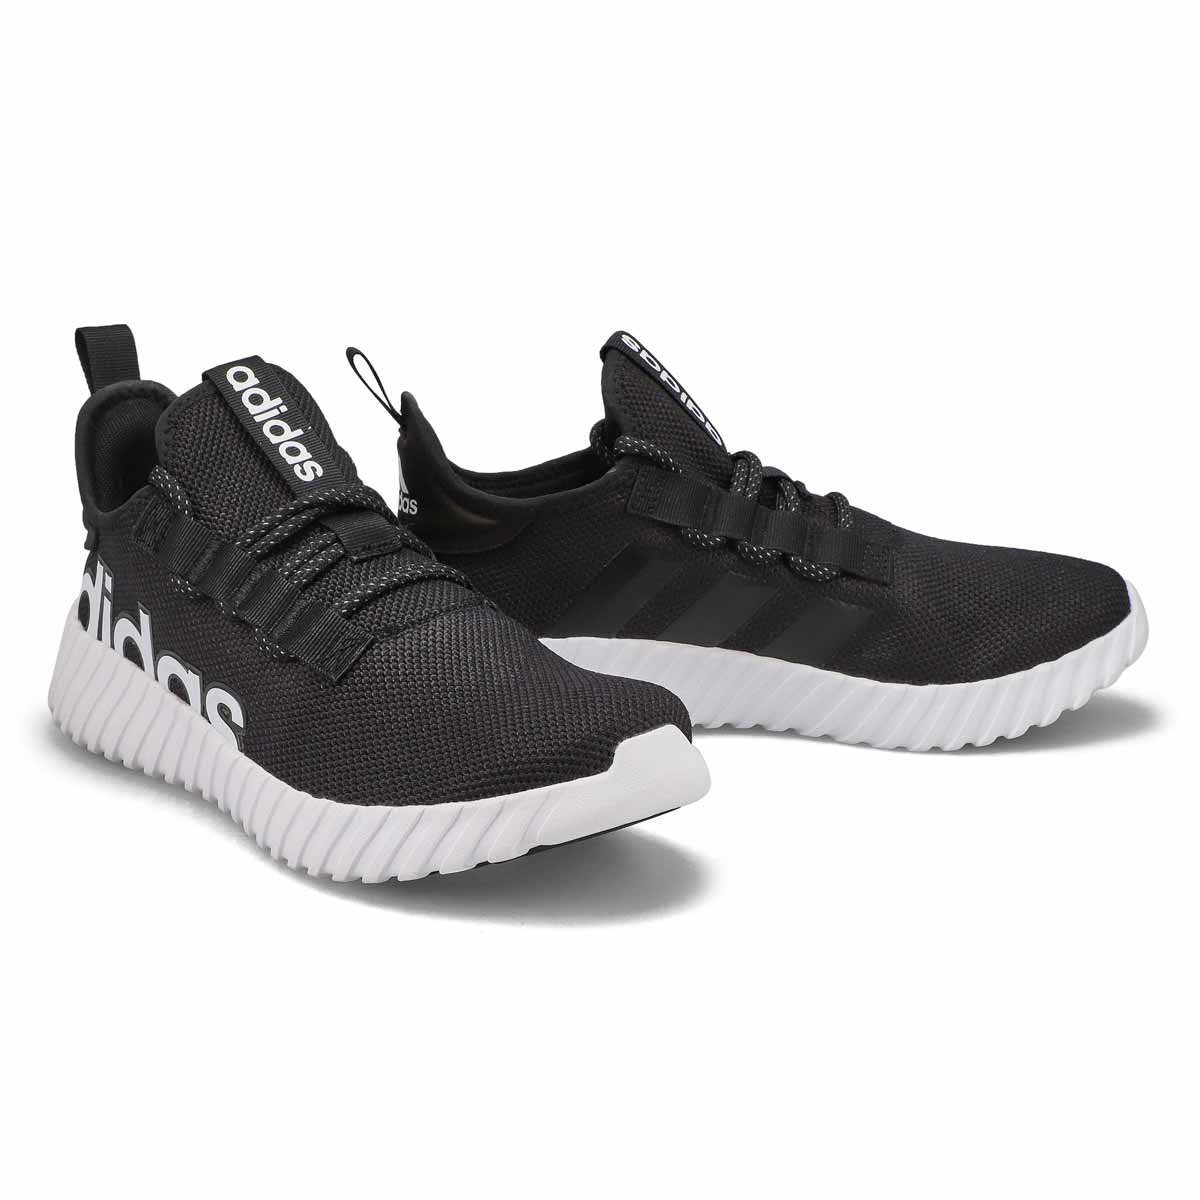 Men's Kaptir 3.0 Slip On Sneaker - Black/White